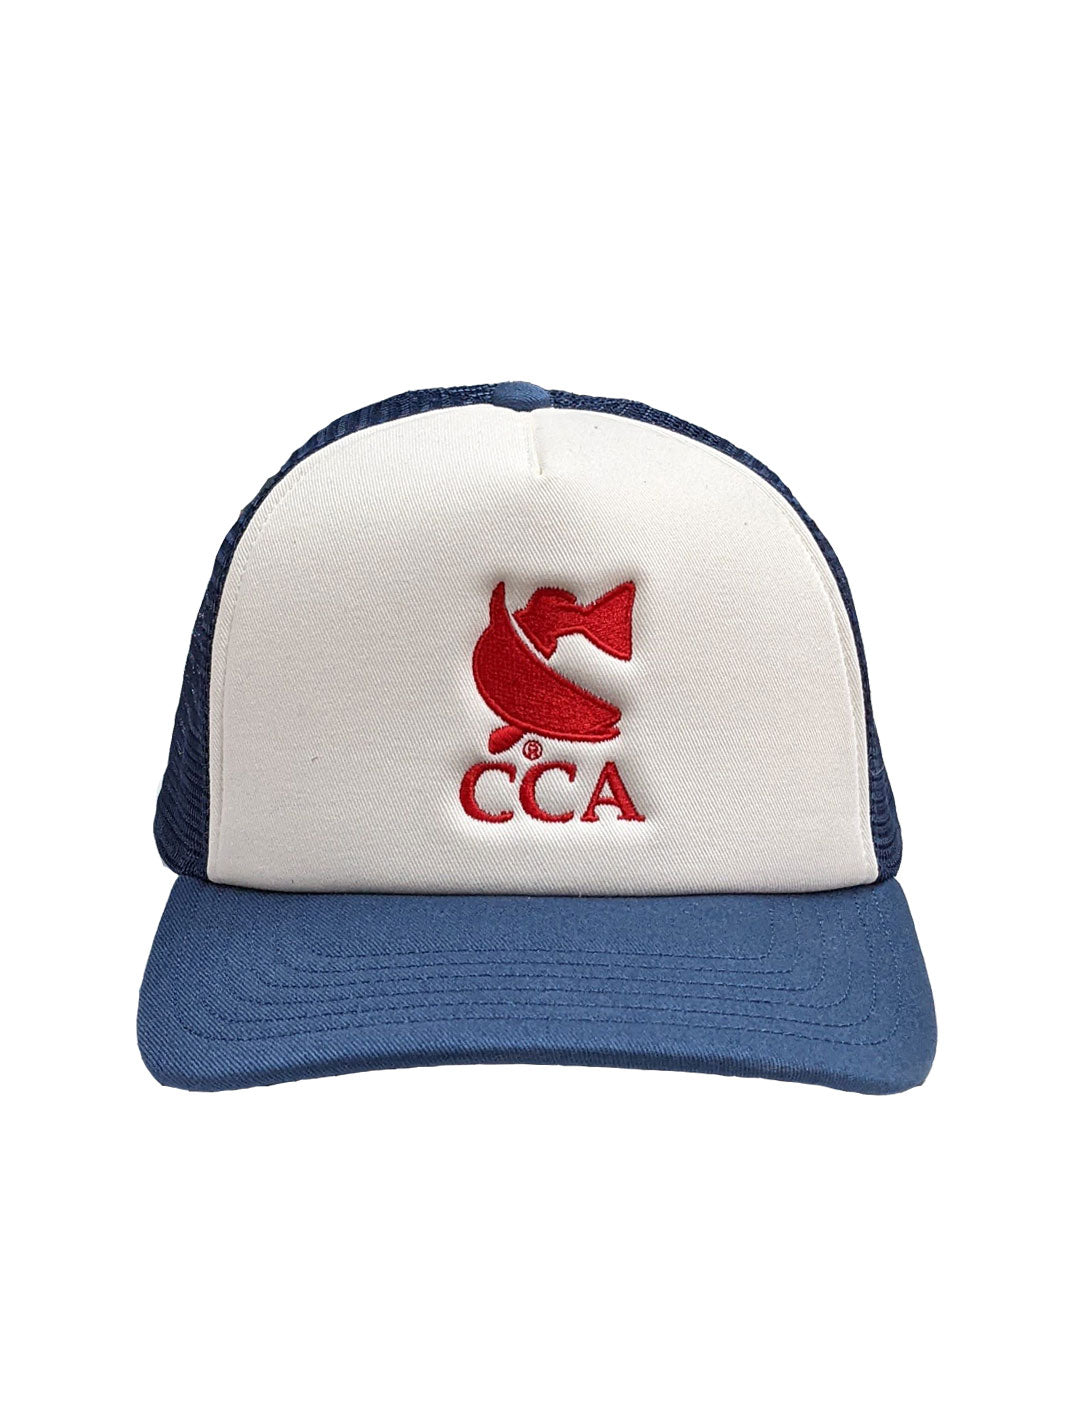 CCA Foam Trucker Hat